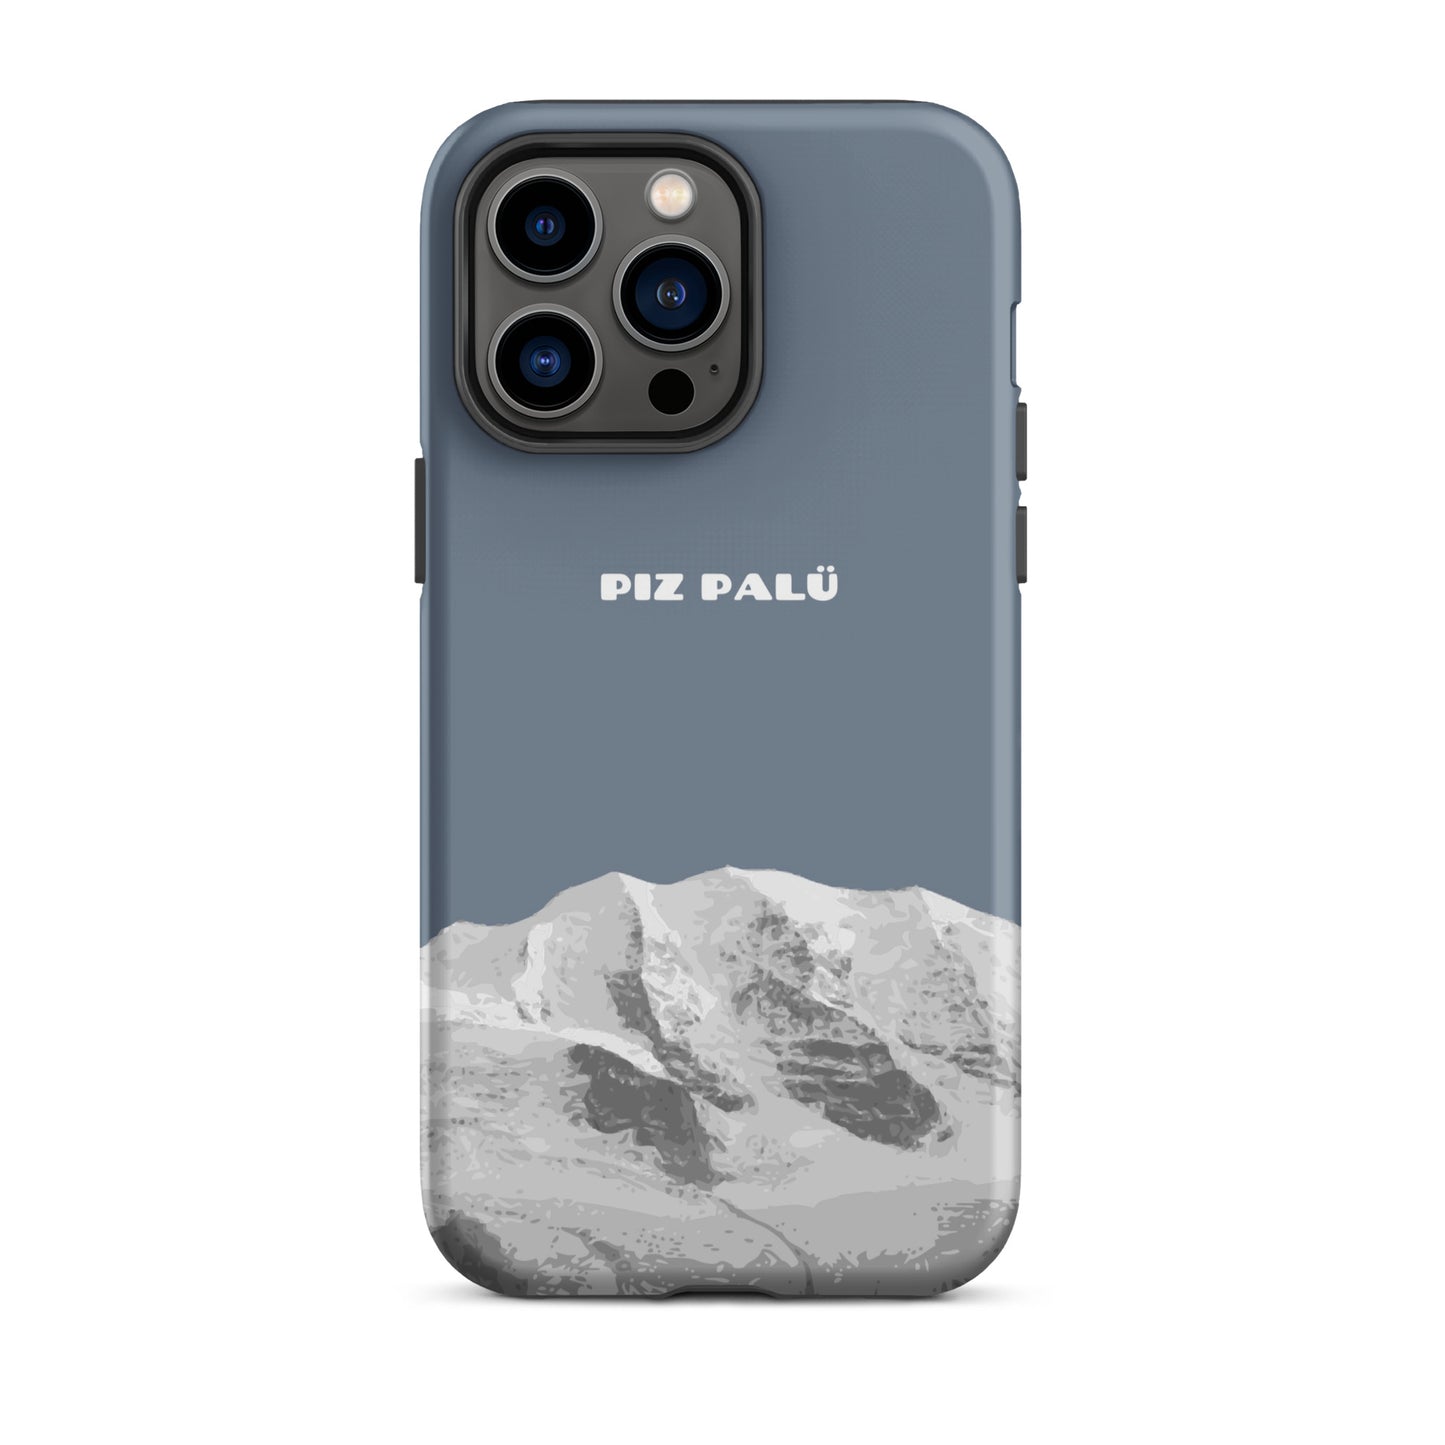 Hülle für das iPhone 14 Pro Max von Apple in der Farbe Schiefergrau, dass den Piz Palü in Graubünden zeigt.